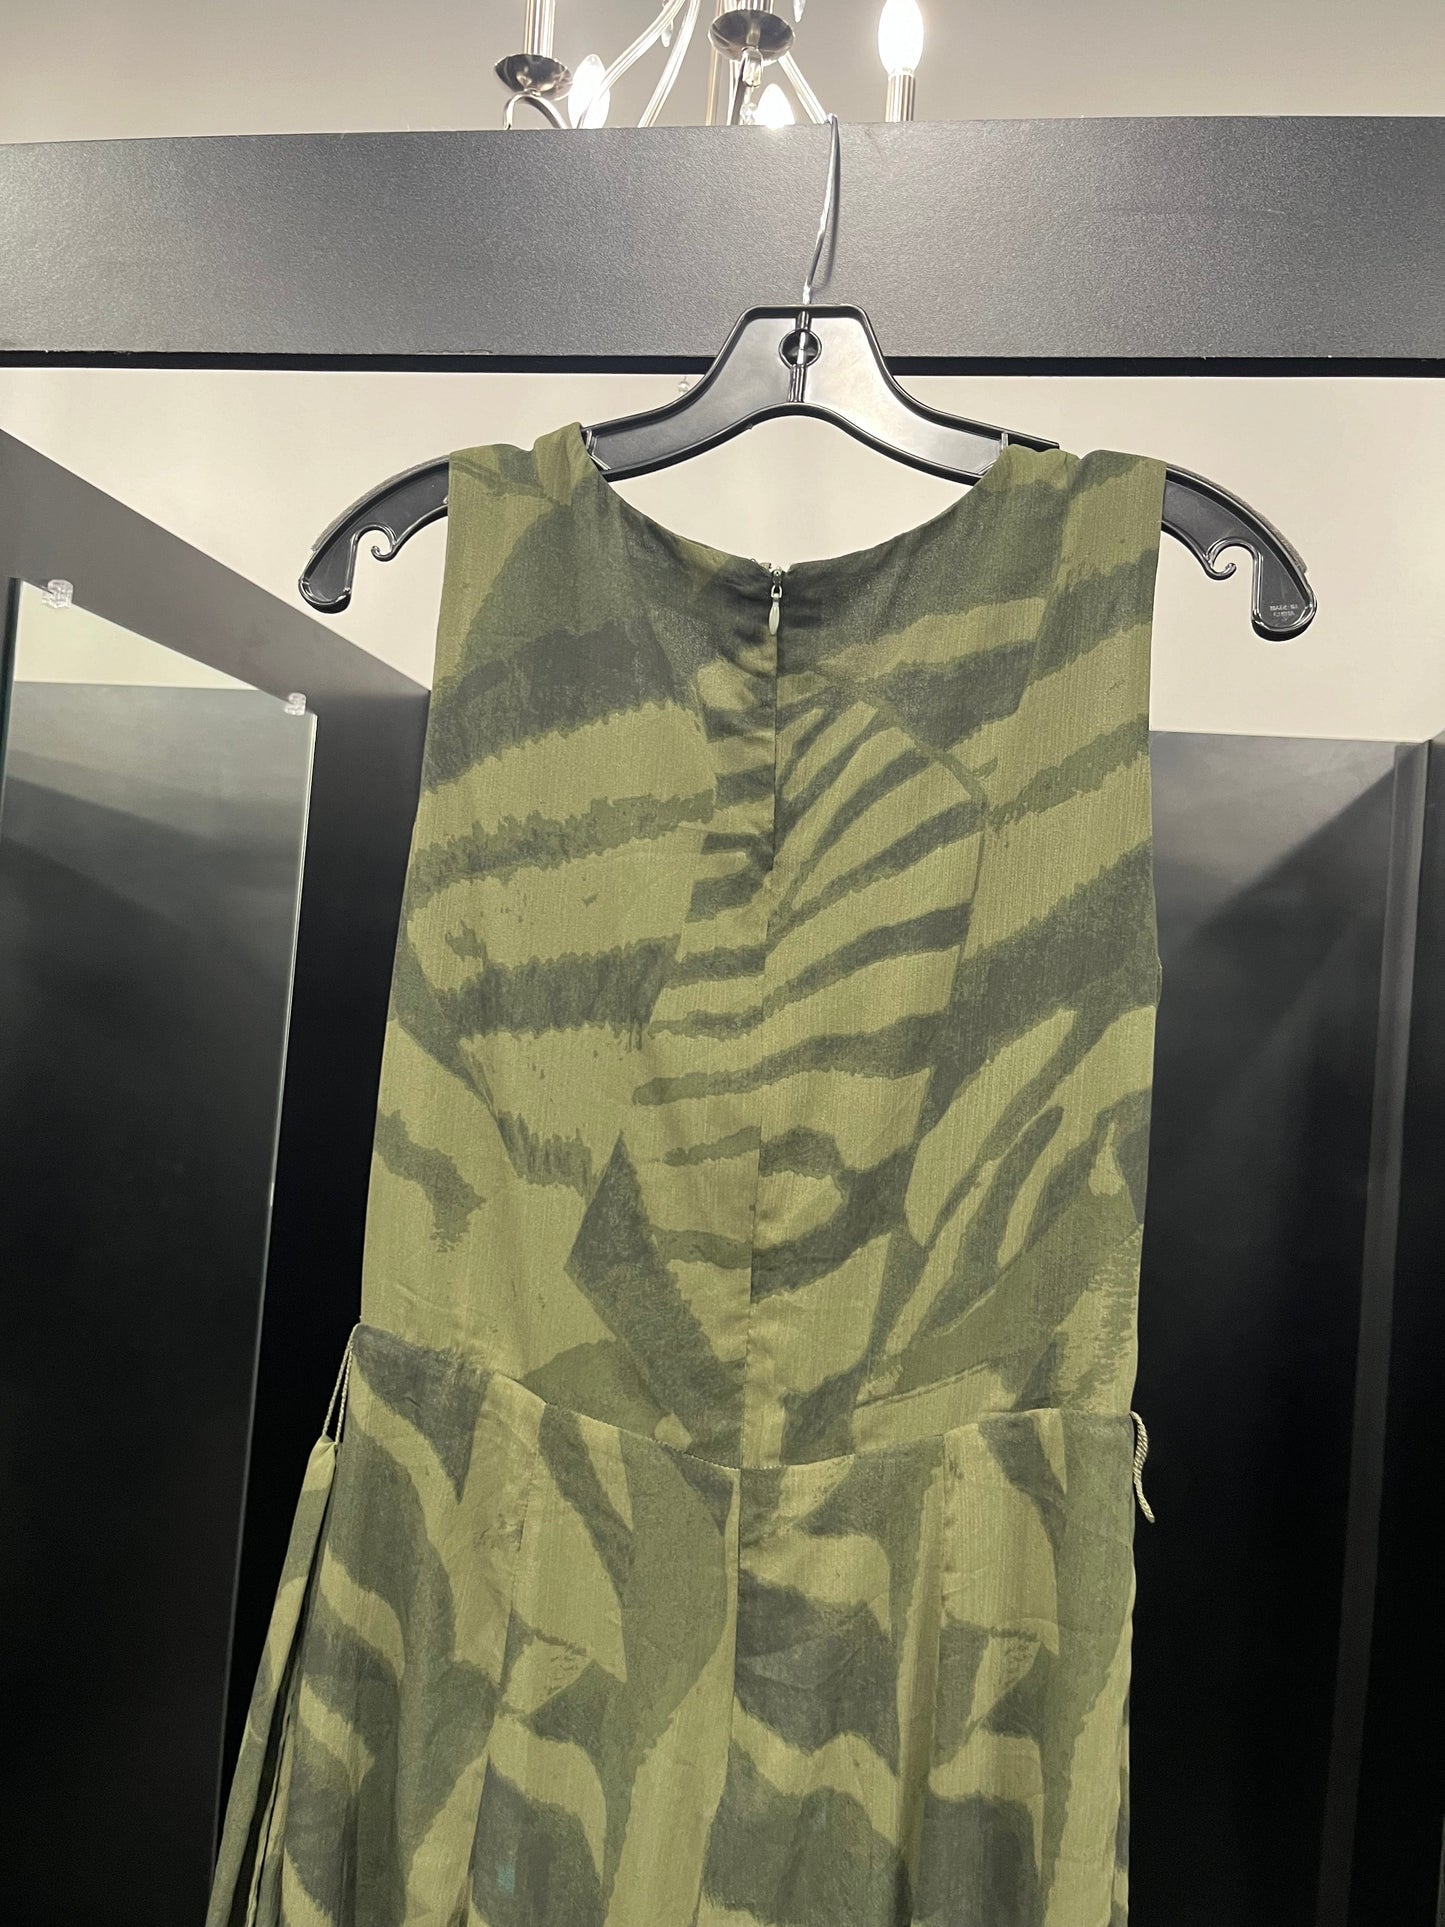 Camoflauge Dress Party Long Ralph Lauren Black Label, Size Xs